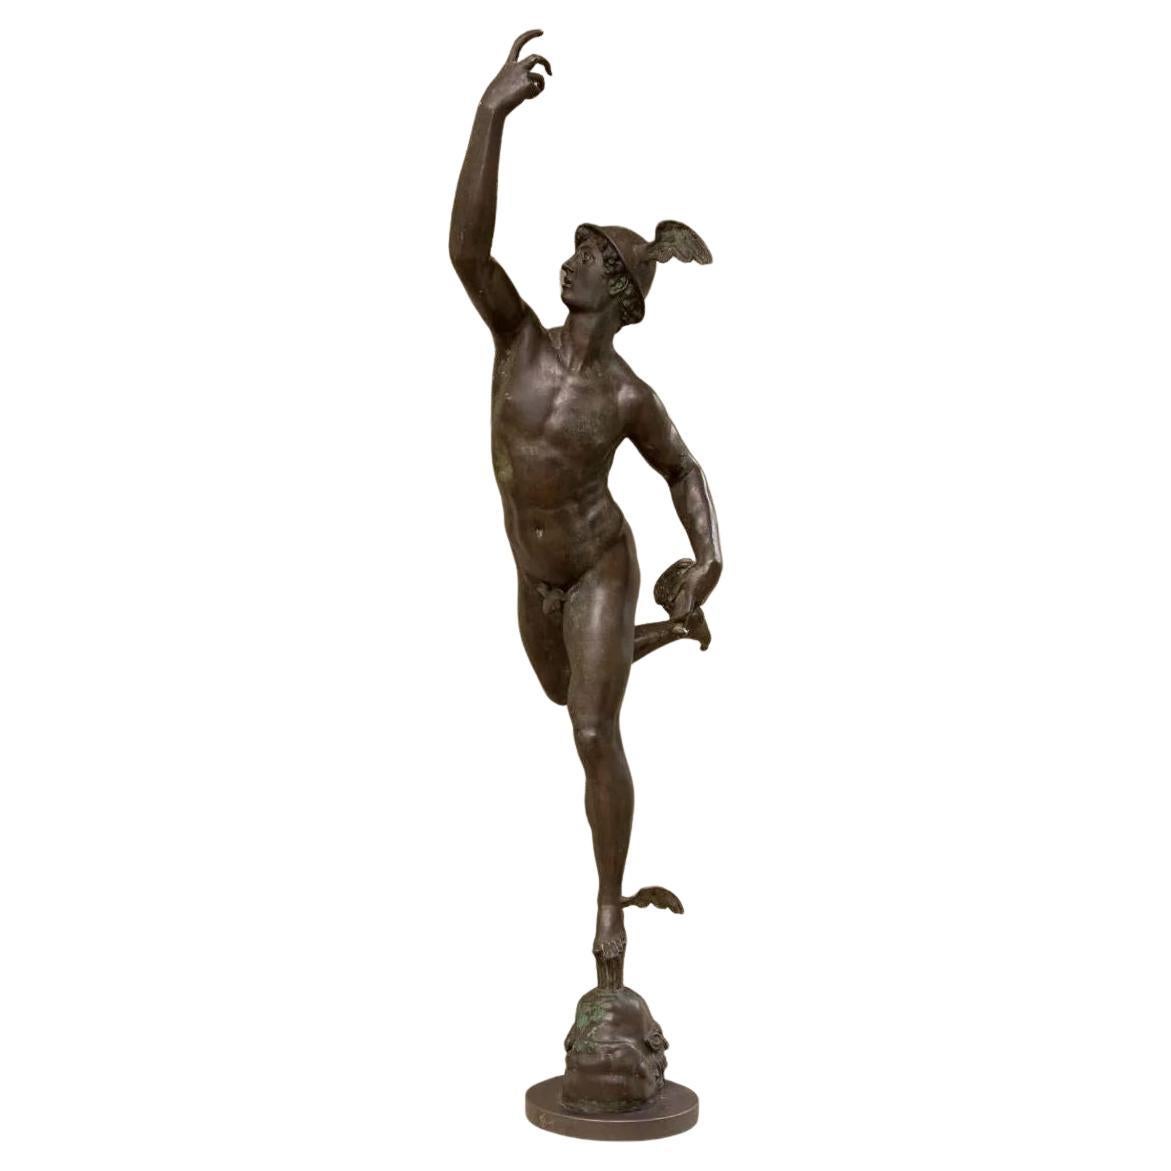 Französischer Künstler, lebensgroße Statue der Hermes, Bronze, Frankreich, 18. Jahrhundert